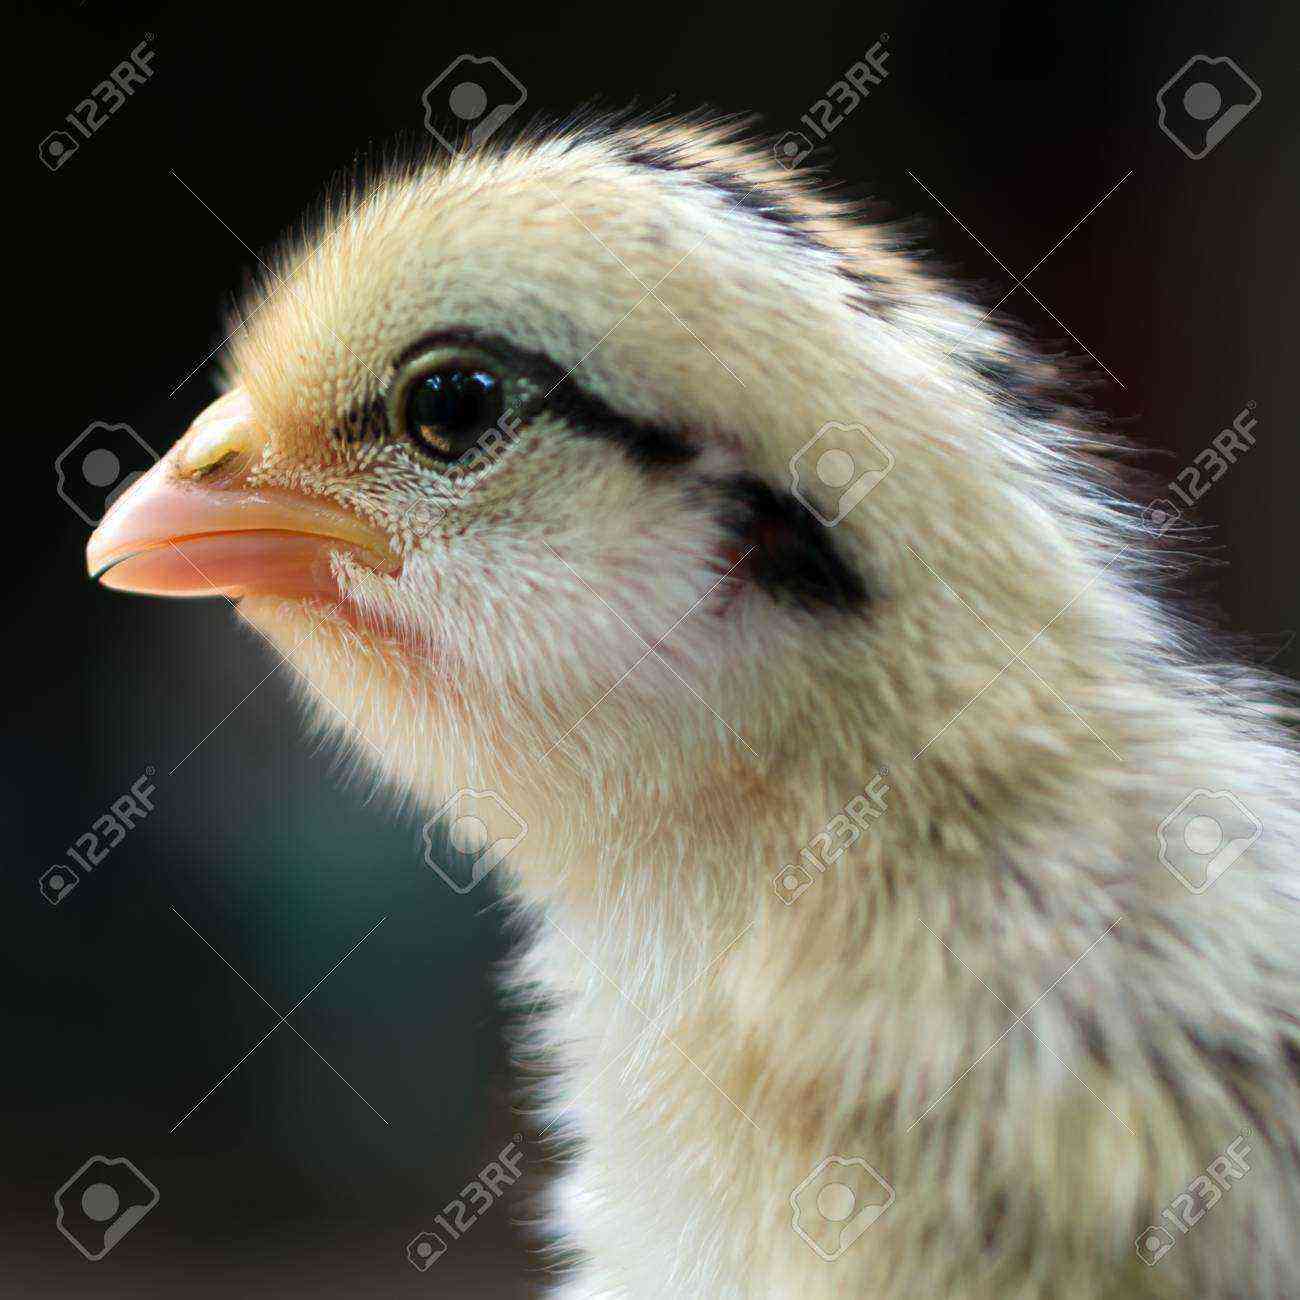 Hens: Omphalite